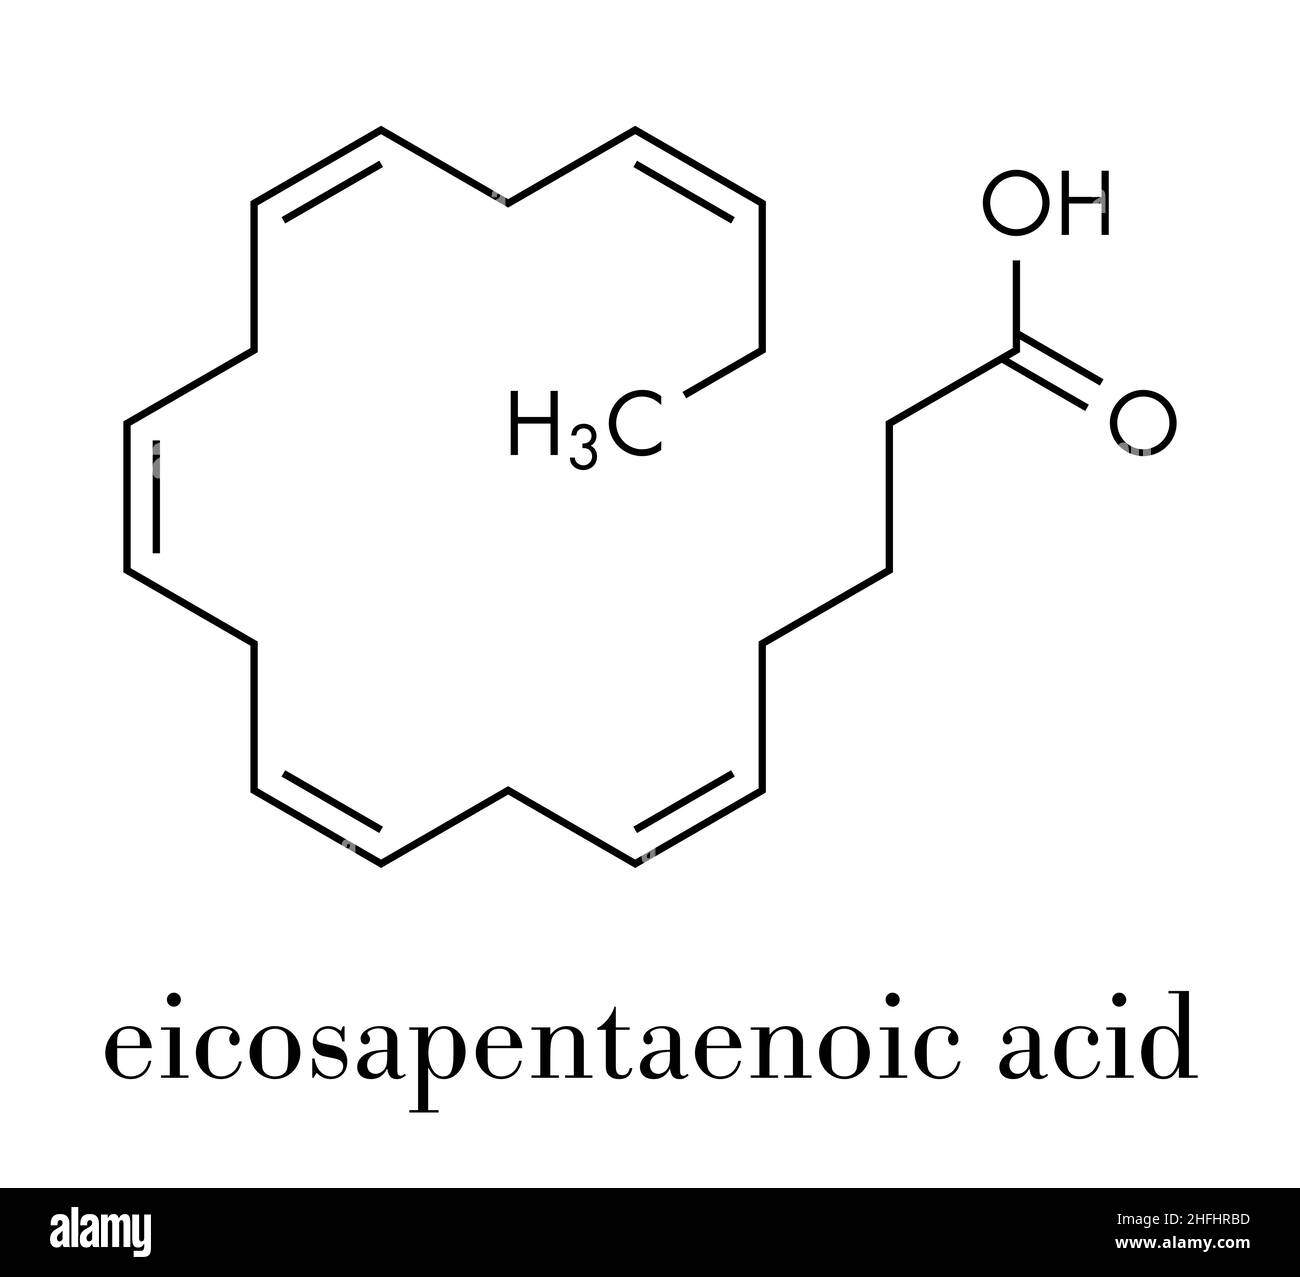 Eicasapentaenoic timnodonic (EPA, molécule de l'acide). Les acides gras  polyinsaturés oméga-3, présents dans l'huile de poisson. Formule  topologique Image Vectorielle Stock - Alamy